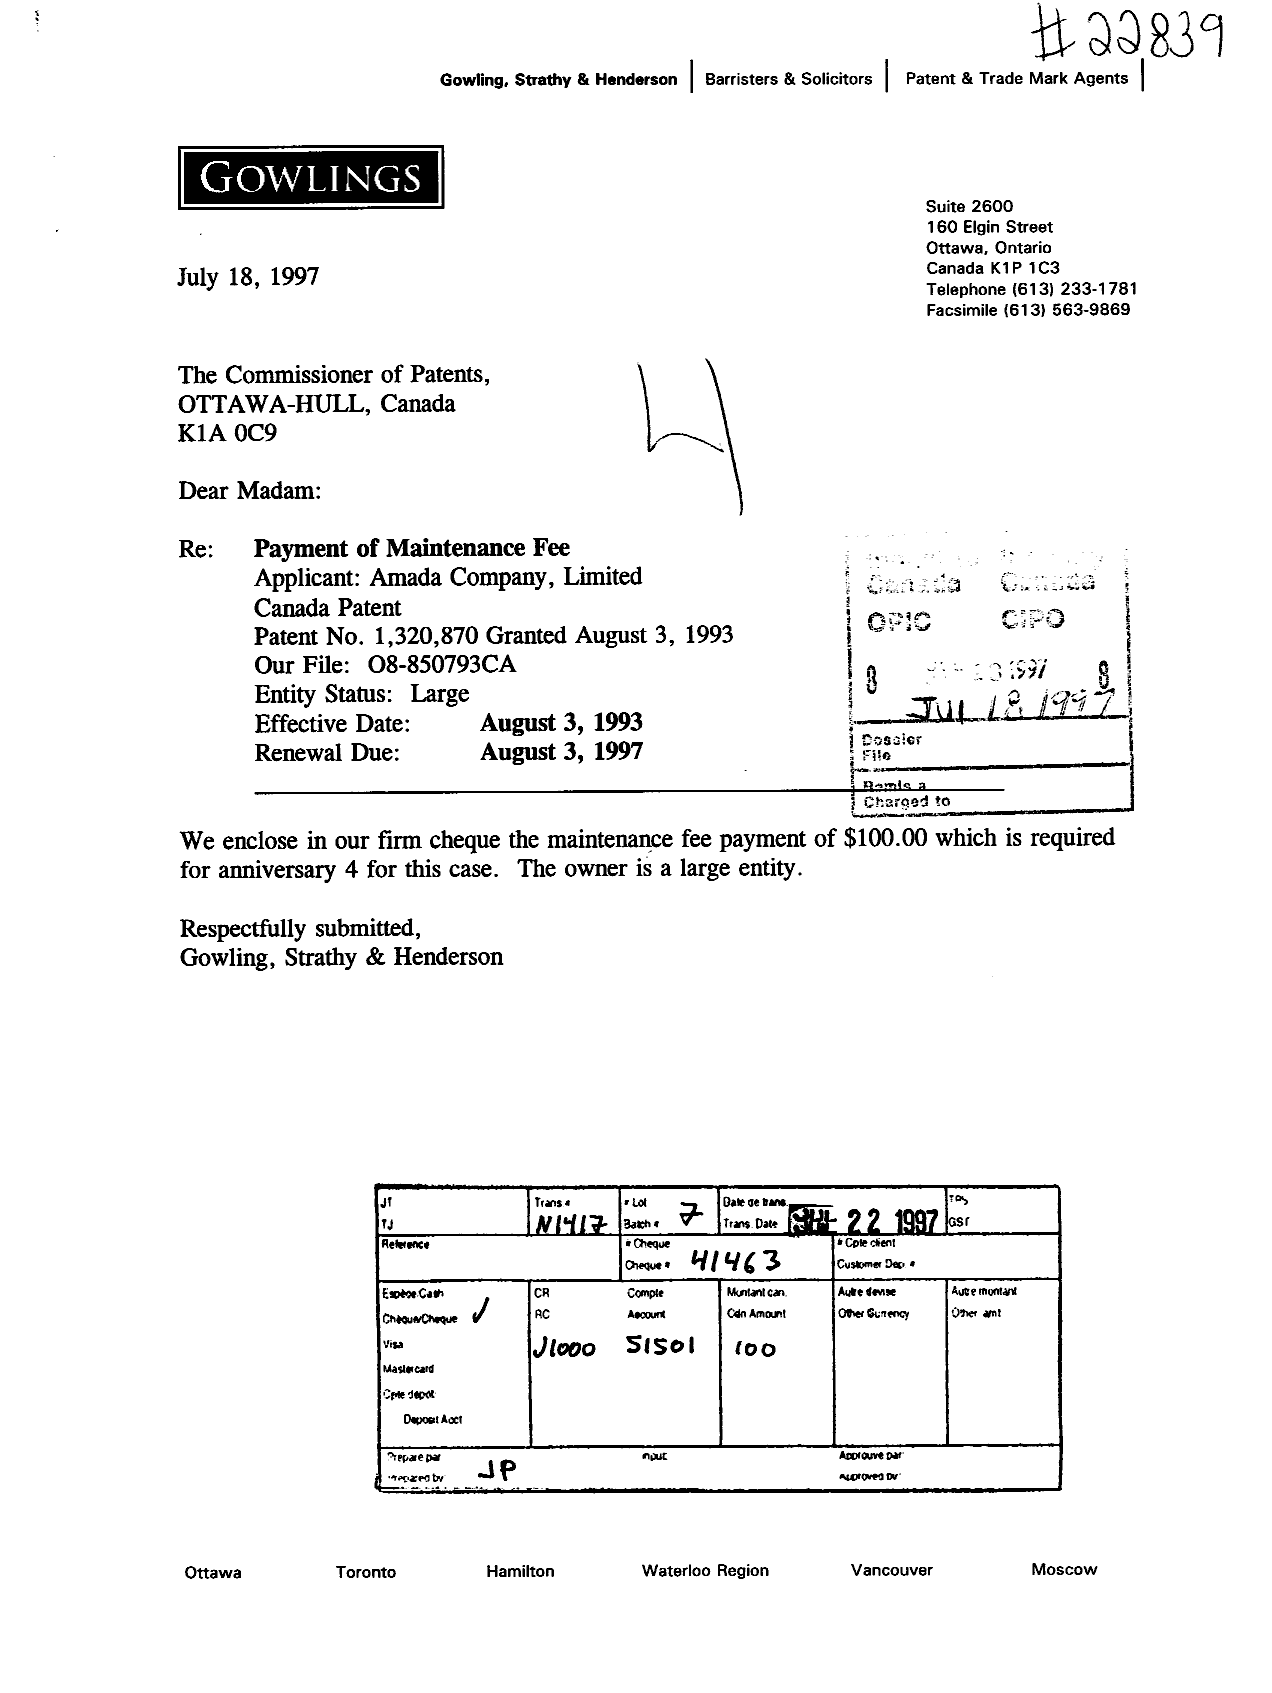 Document de brevet canadien 1320870. Taxes 19970718. Image 1 de 1